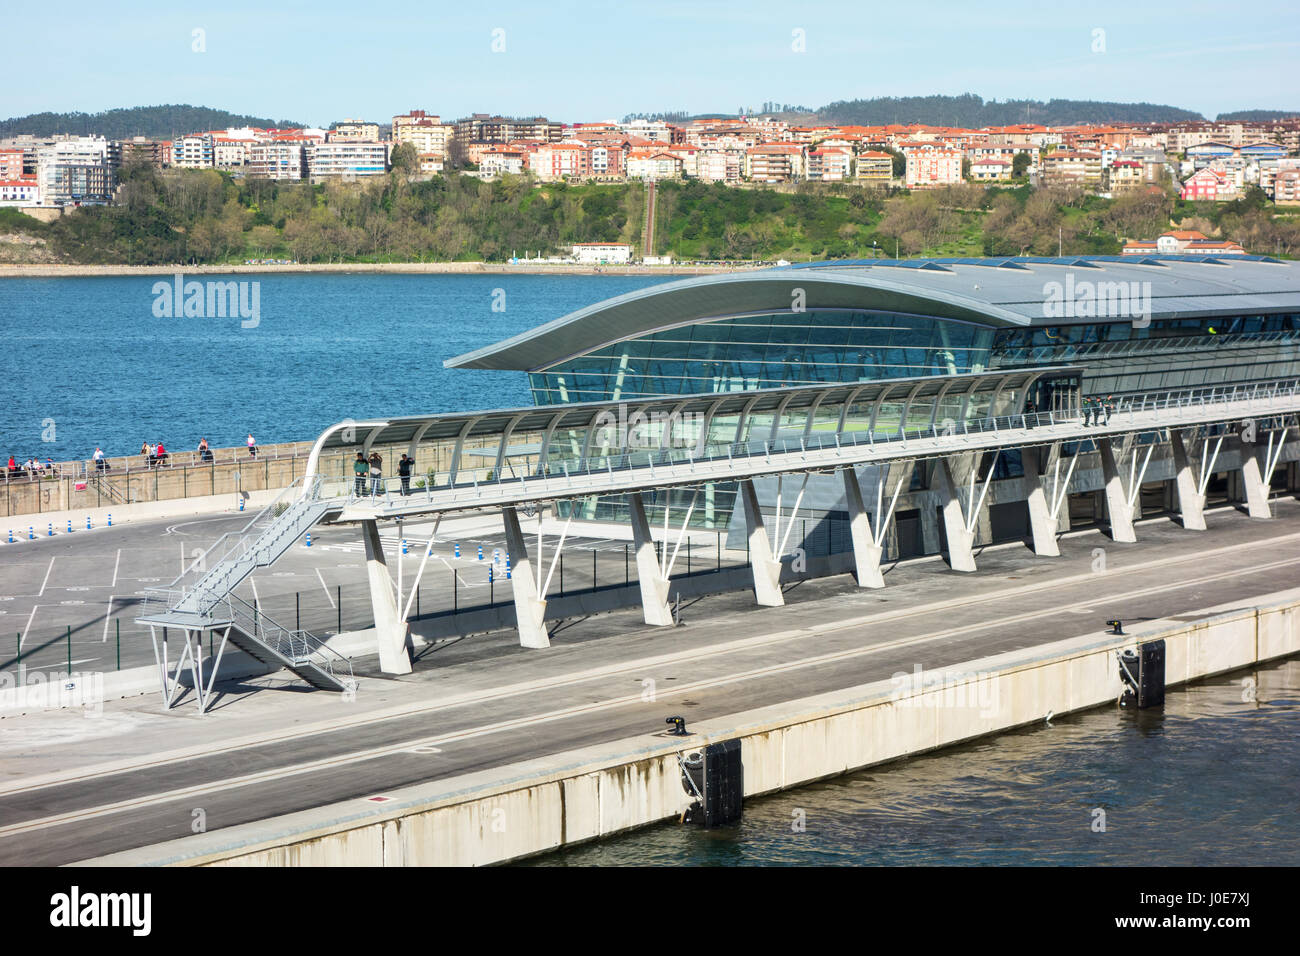 Le nouveau terminal du port de Bilbao, Espagne, station d'espagnol pour les marchandises et les passagers voyageant dans la province de Biscaye Banque D'Images